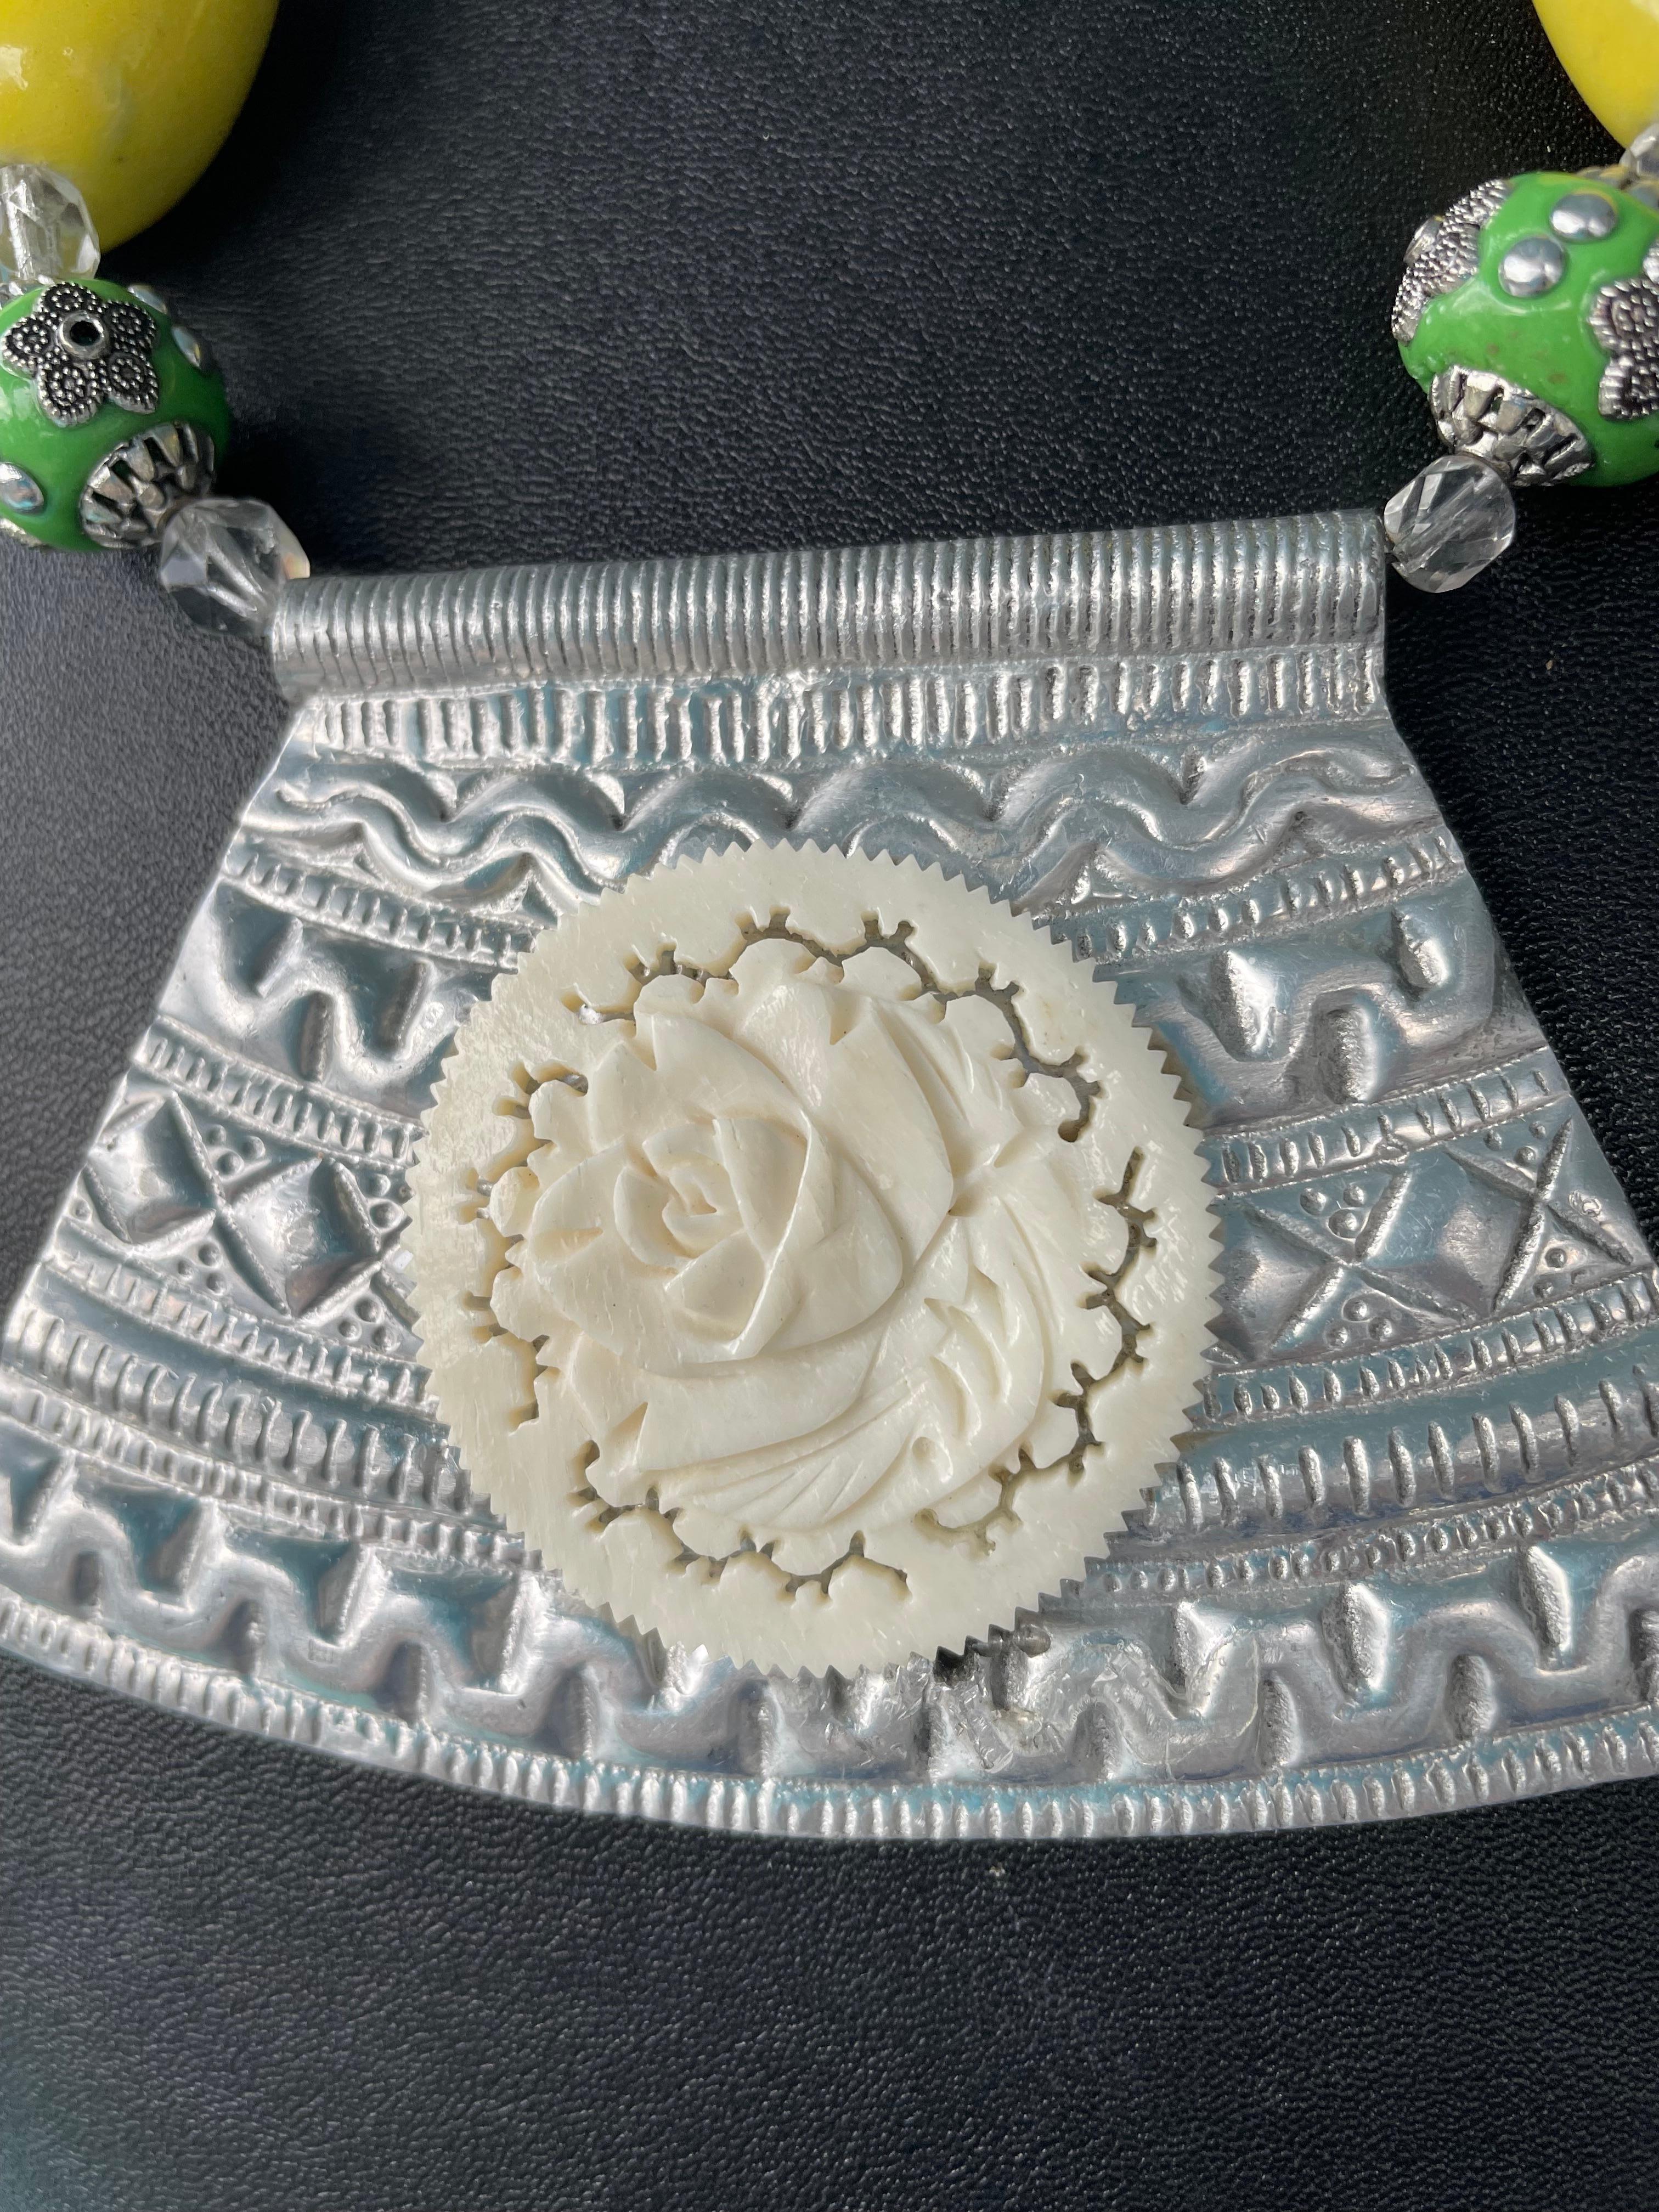 Lorraine's Bijoux bietet eine Vintage Indian Metal und Vintage geschnitzt Bone floral centerpiece Halskette mit großen gelben Harz Herz Perlen, indonesischen grünen Harz und Silber Perlen, tibetischen Silber geschnitzt Perlen, und grün und gelb